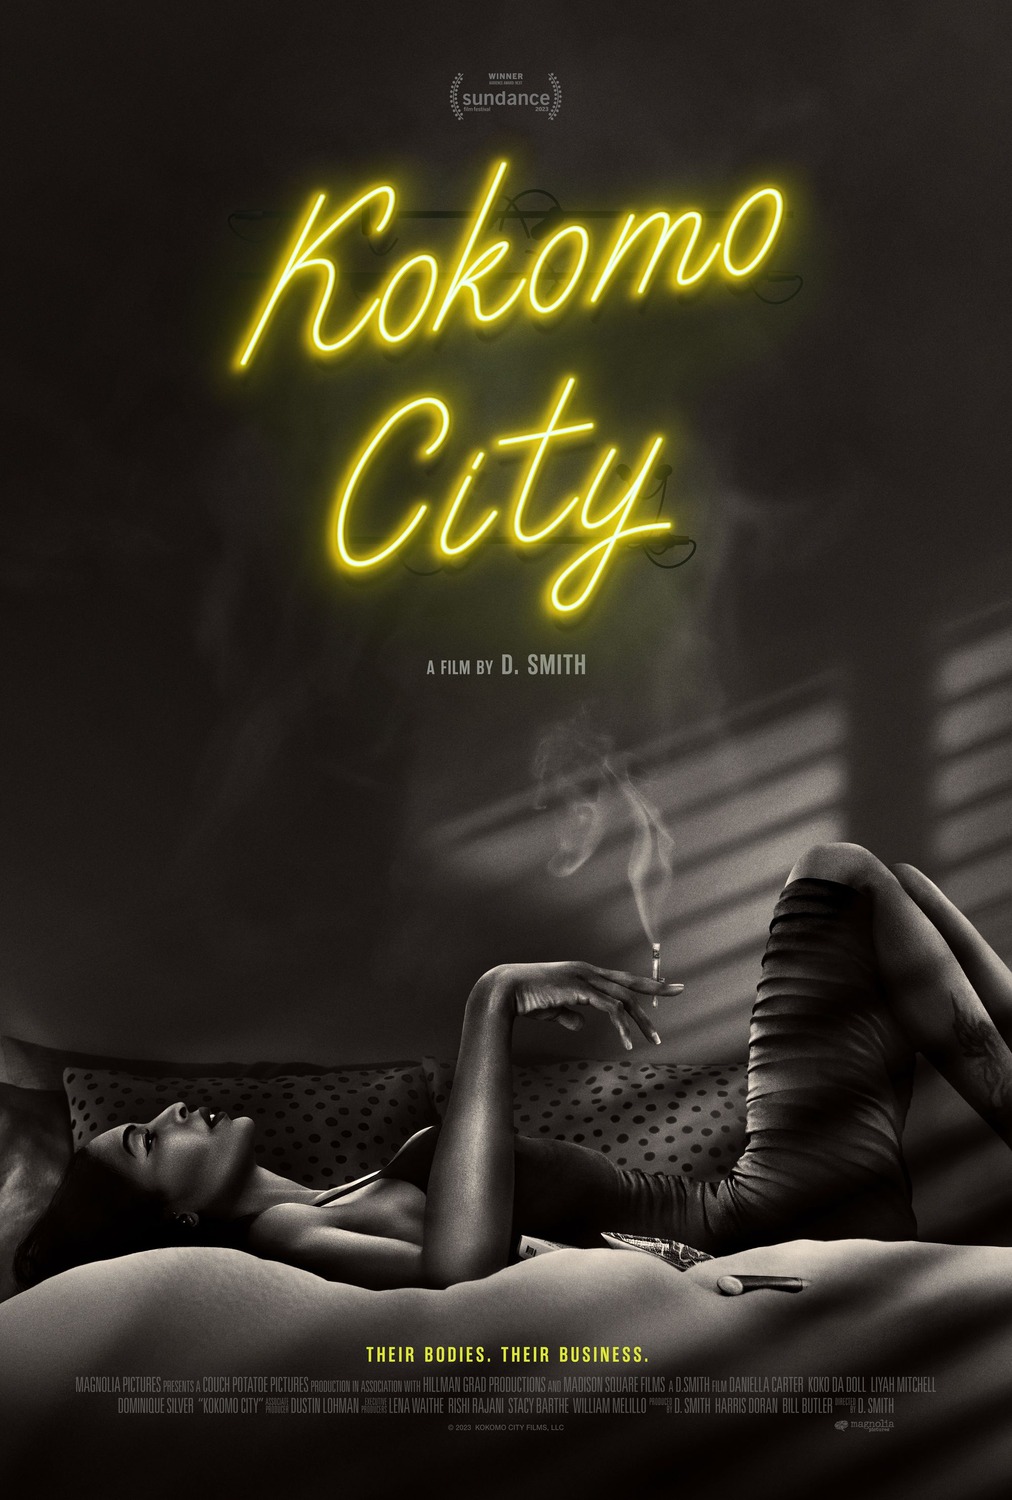 Extra Large Movie Poster Image for Kokomo City 